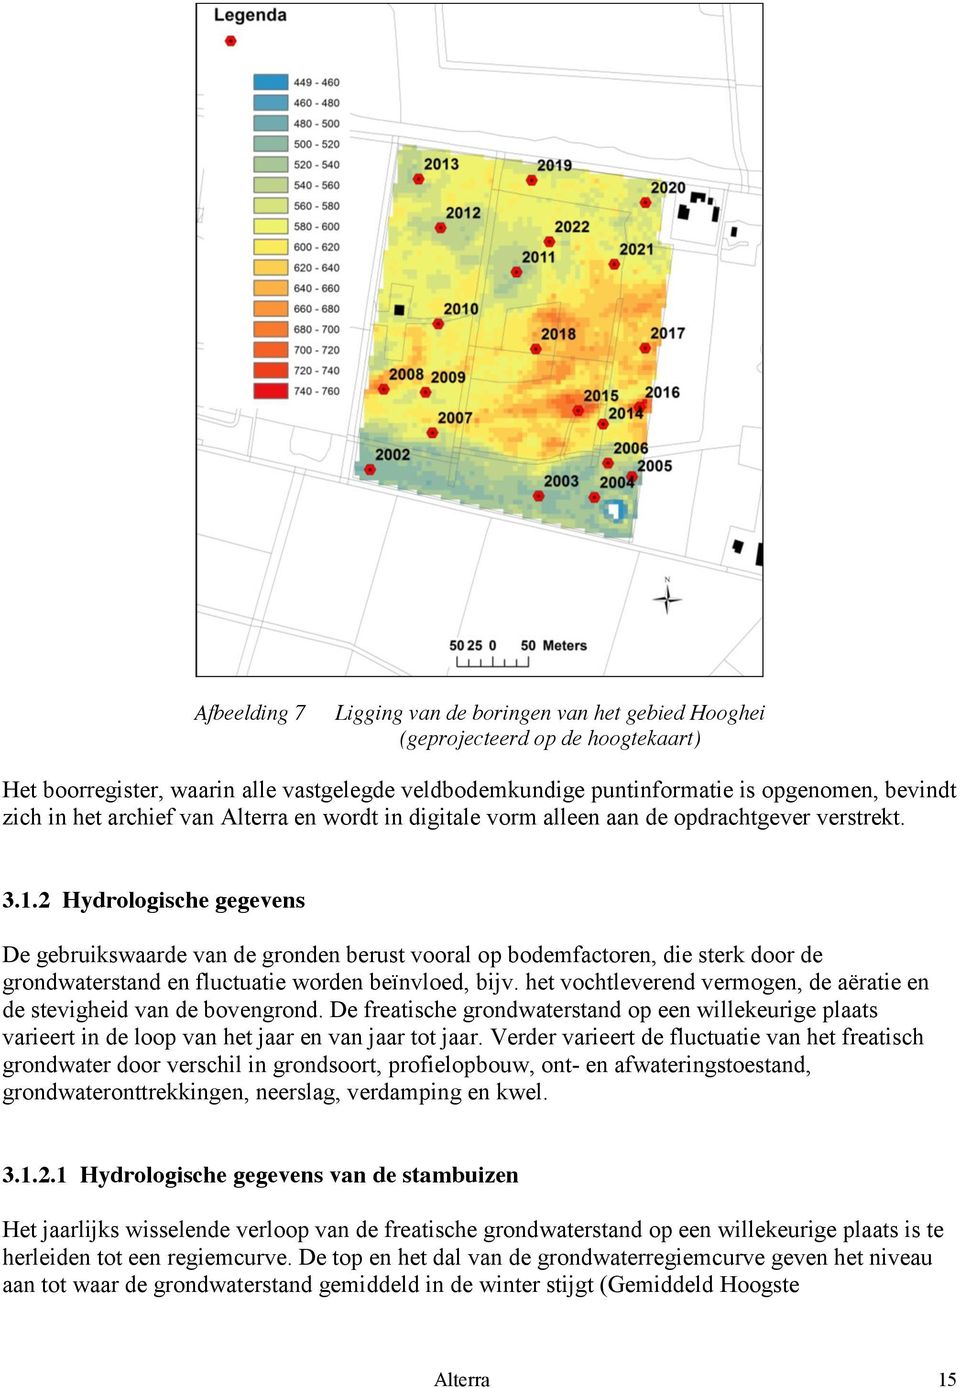 2 Hydrologische gegevens De gebruikswaarde van de gronden berust vooral op bodemfactoren, die sterk door de grondwaterstand en fluctuatie worden beïnvloed, bijv.